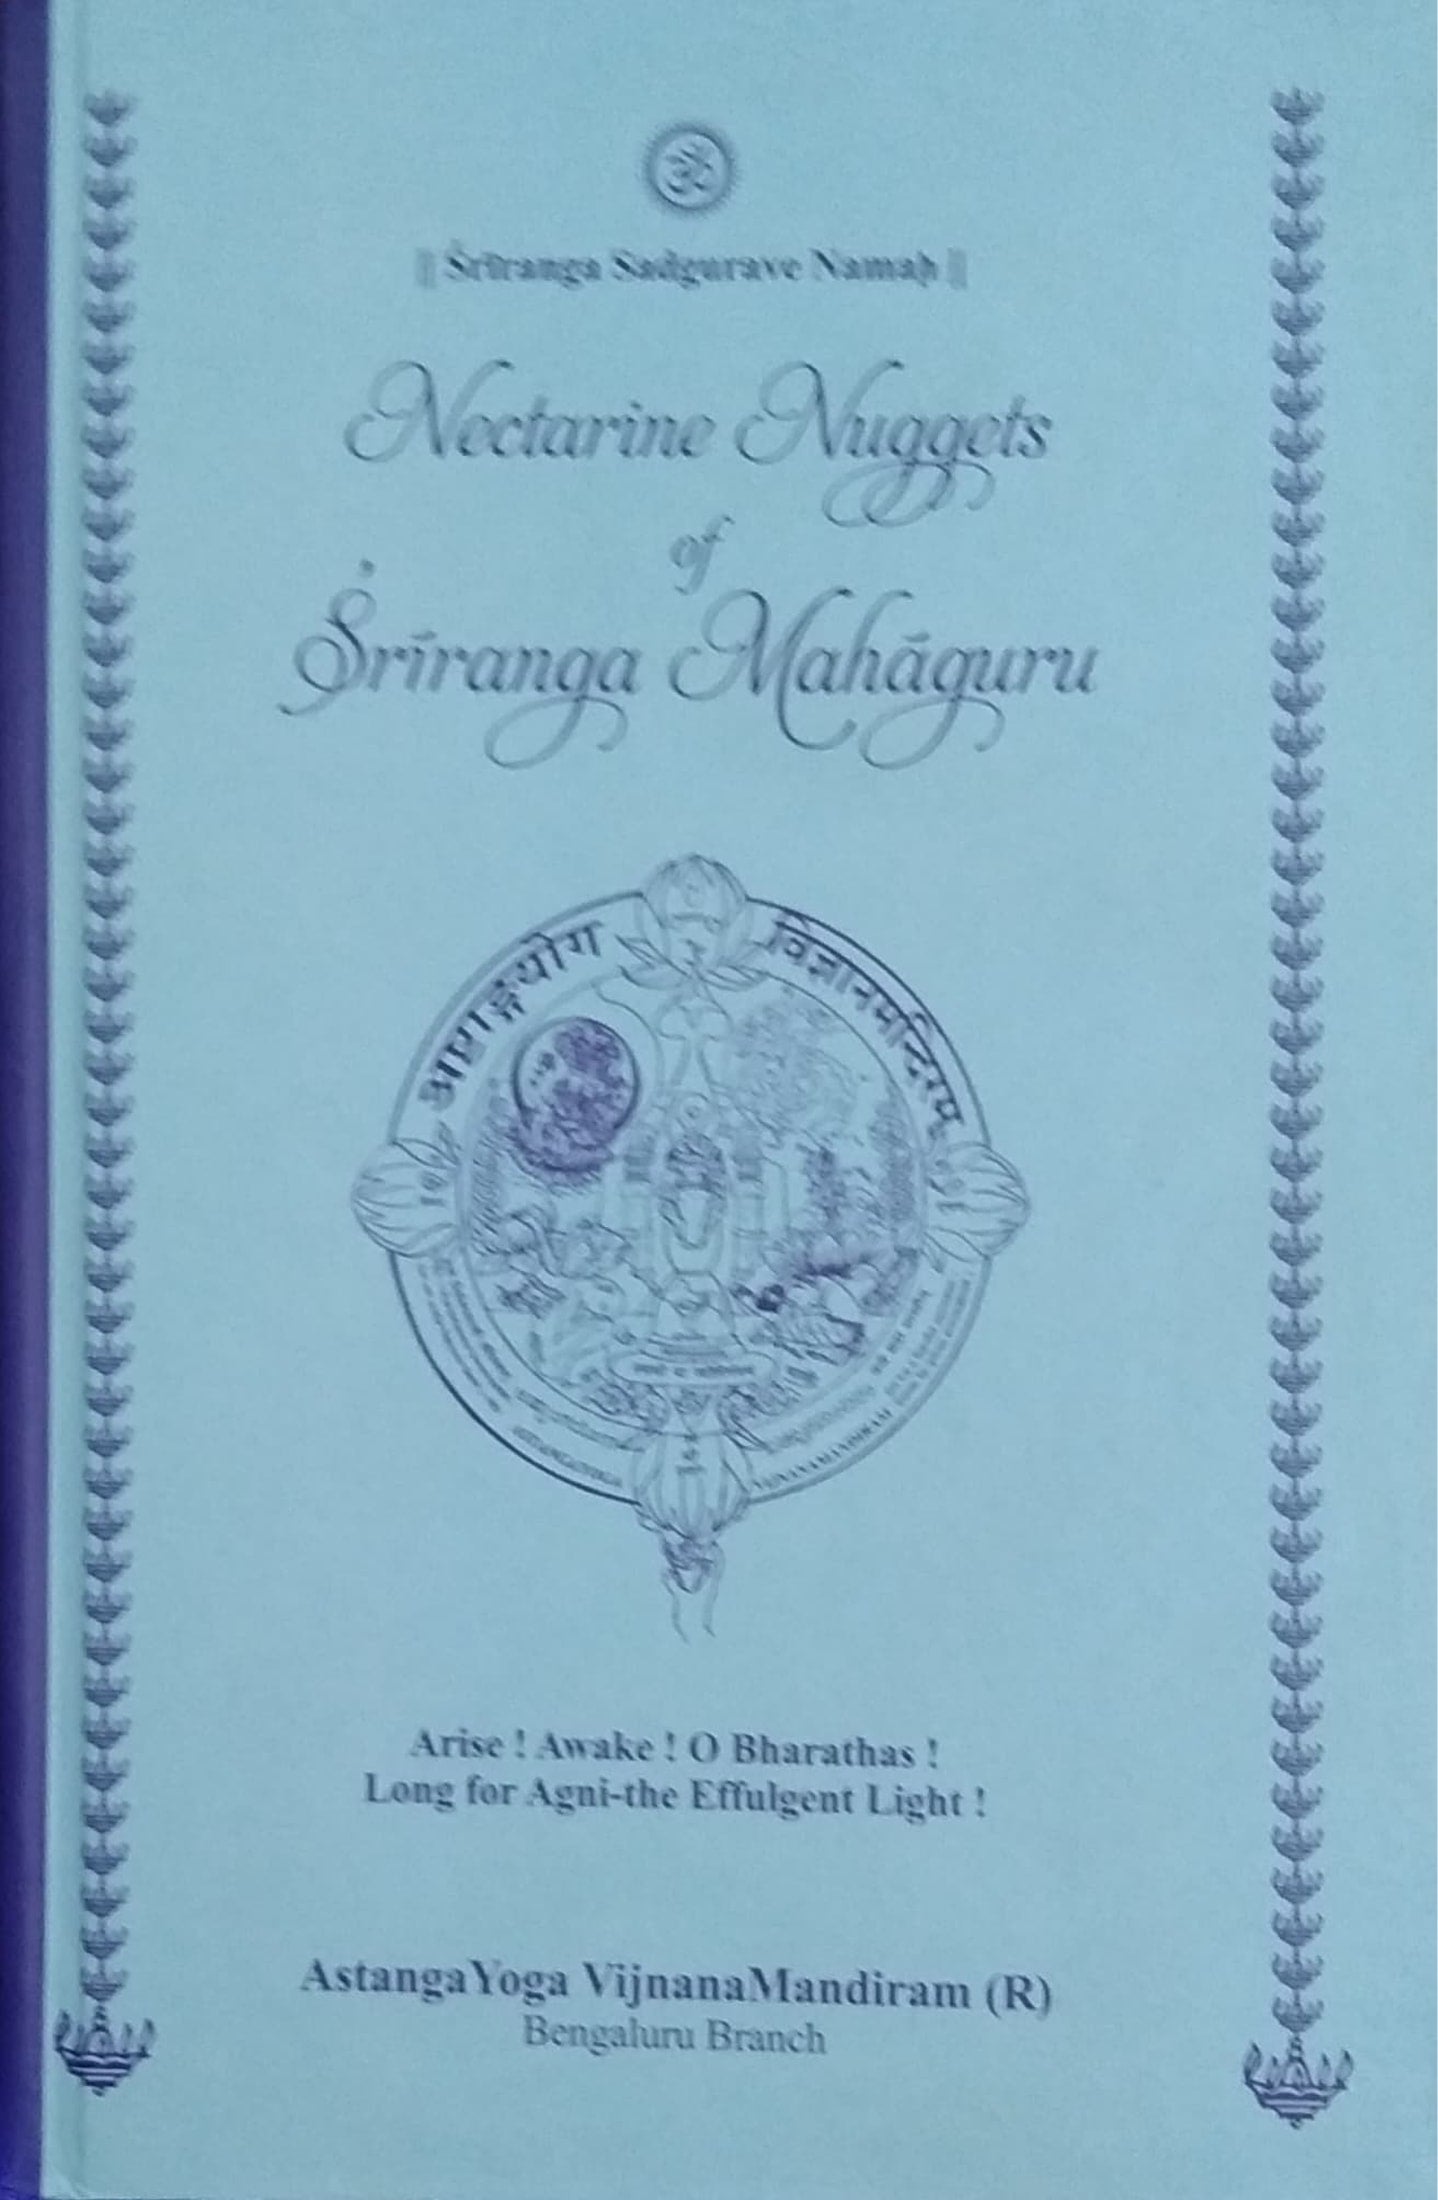 Nectarine Naggets of Sriranga Mahaguru